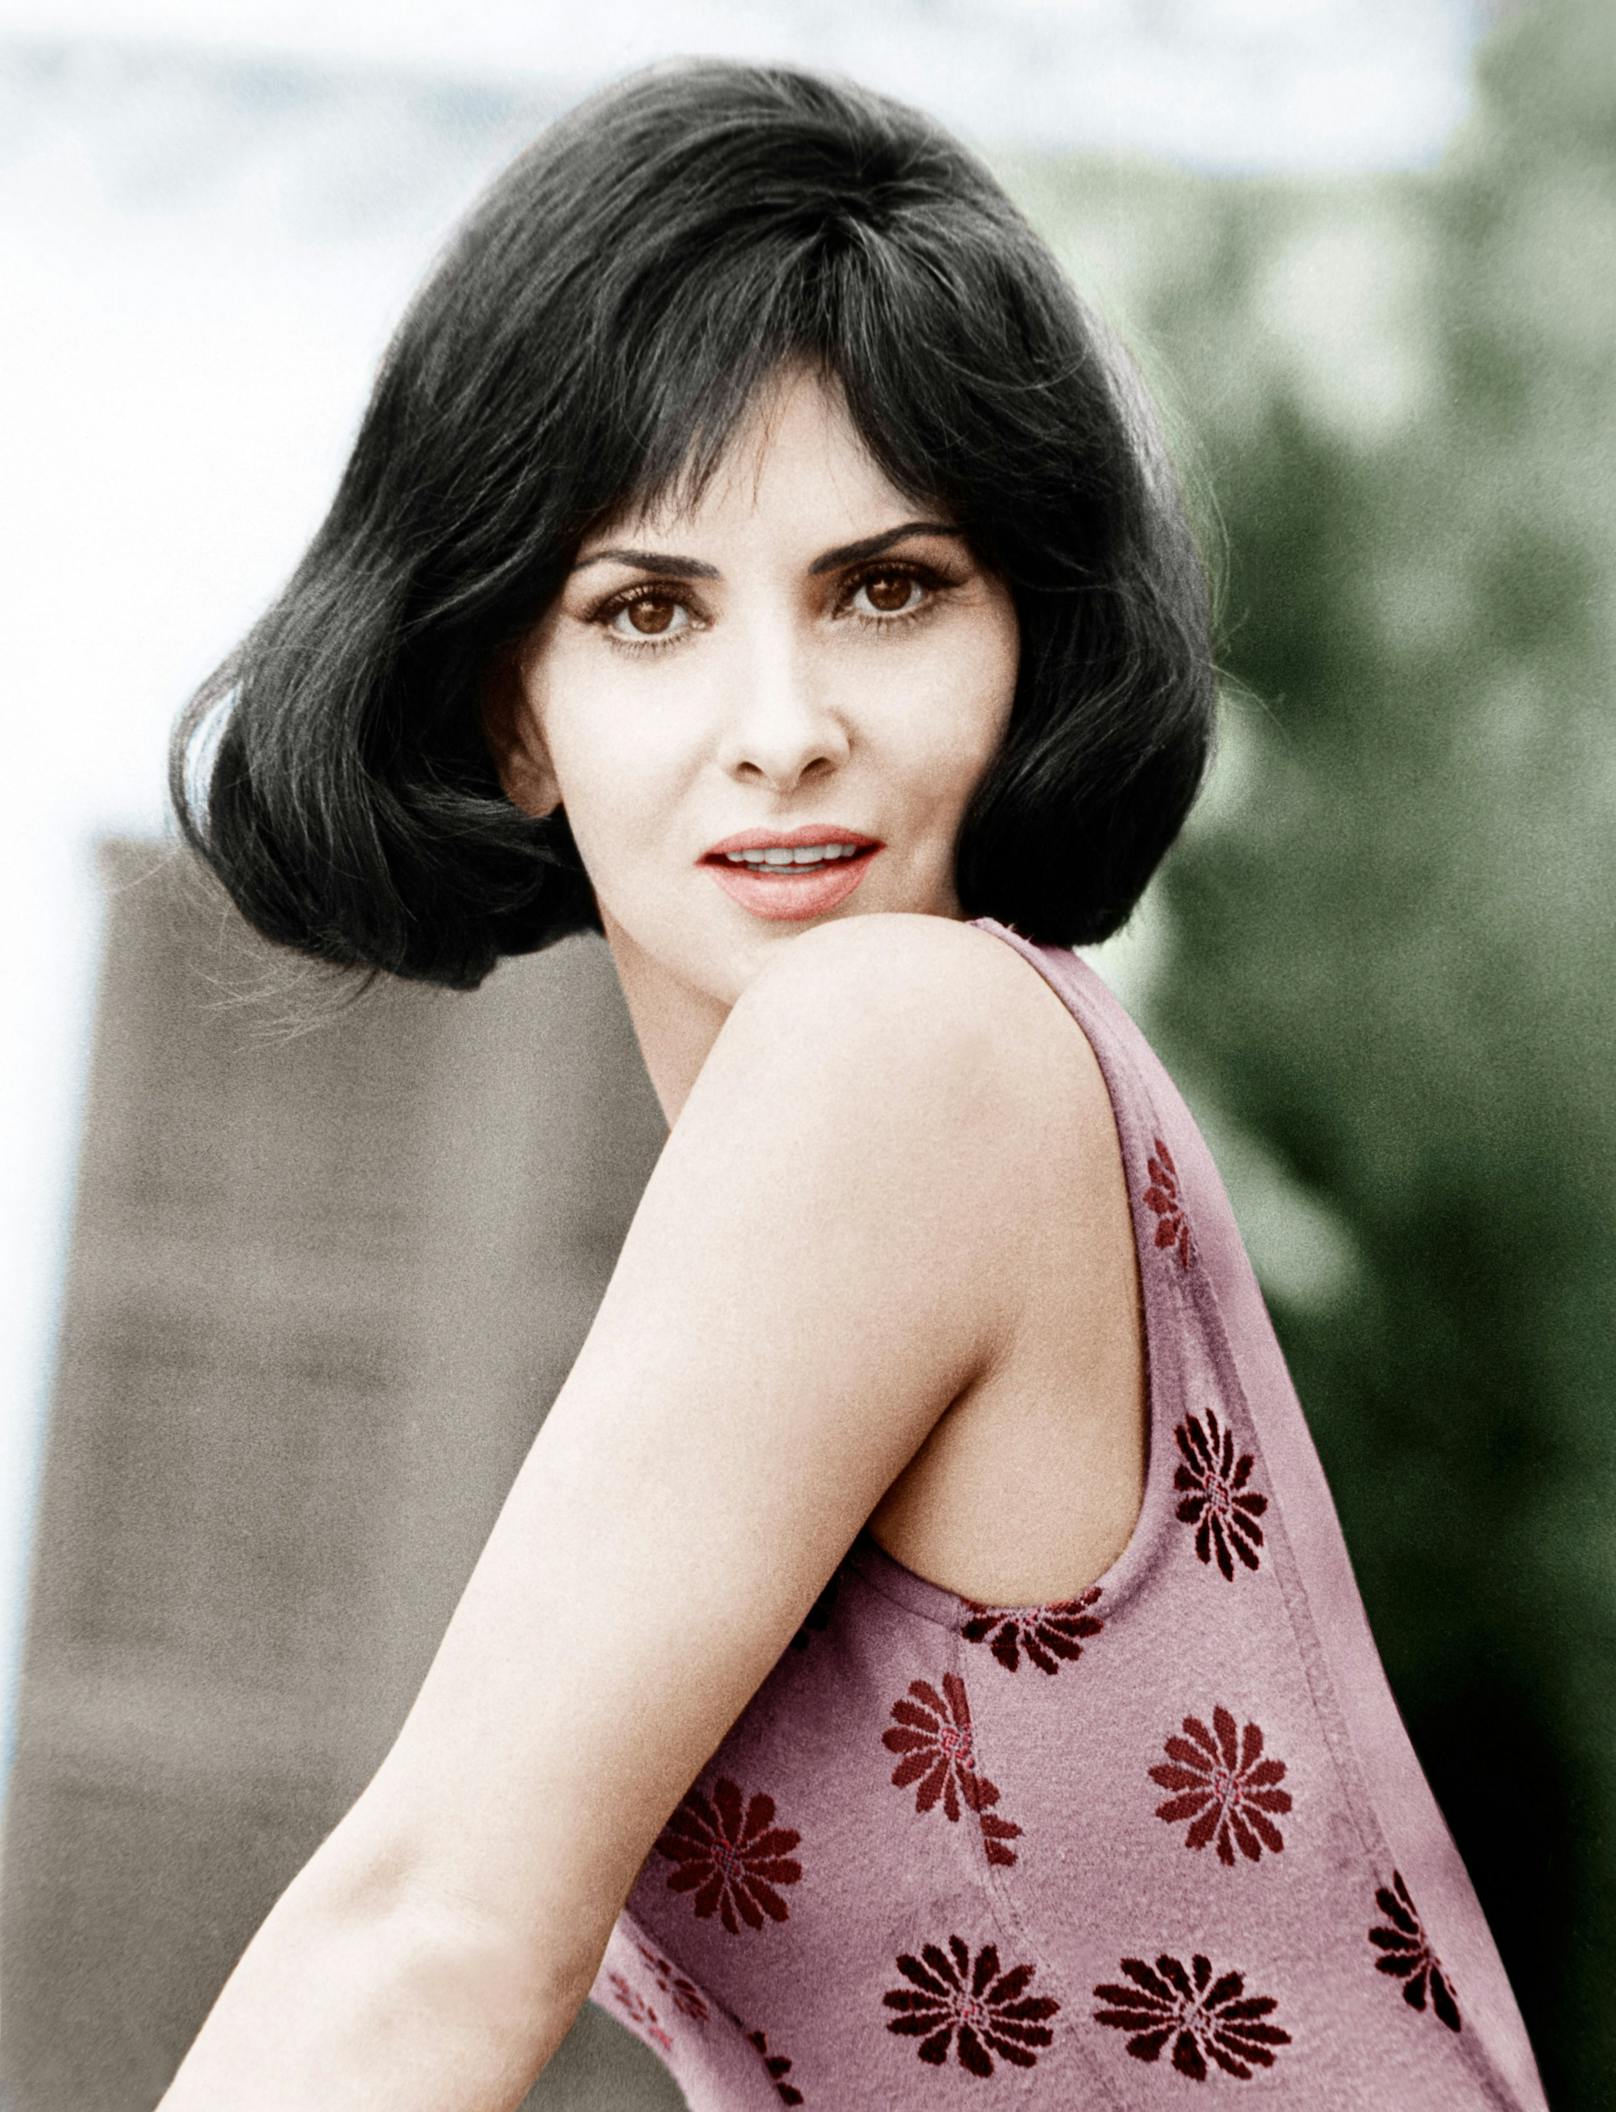 Die italienische Schauspielerin wurde immer wieder als "schönste Frau der Welt" bezeichnet.